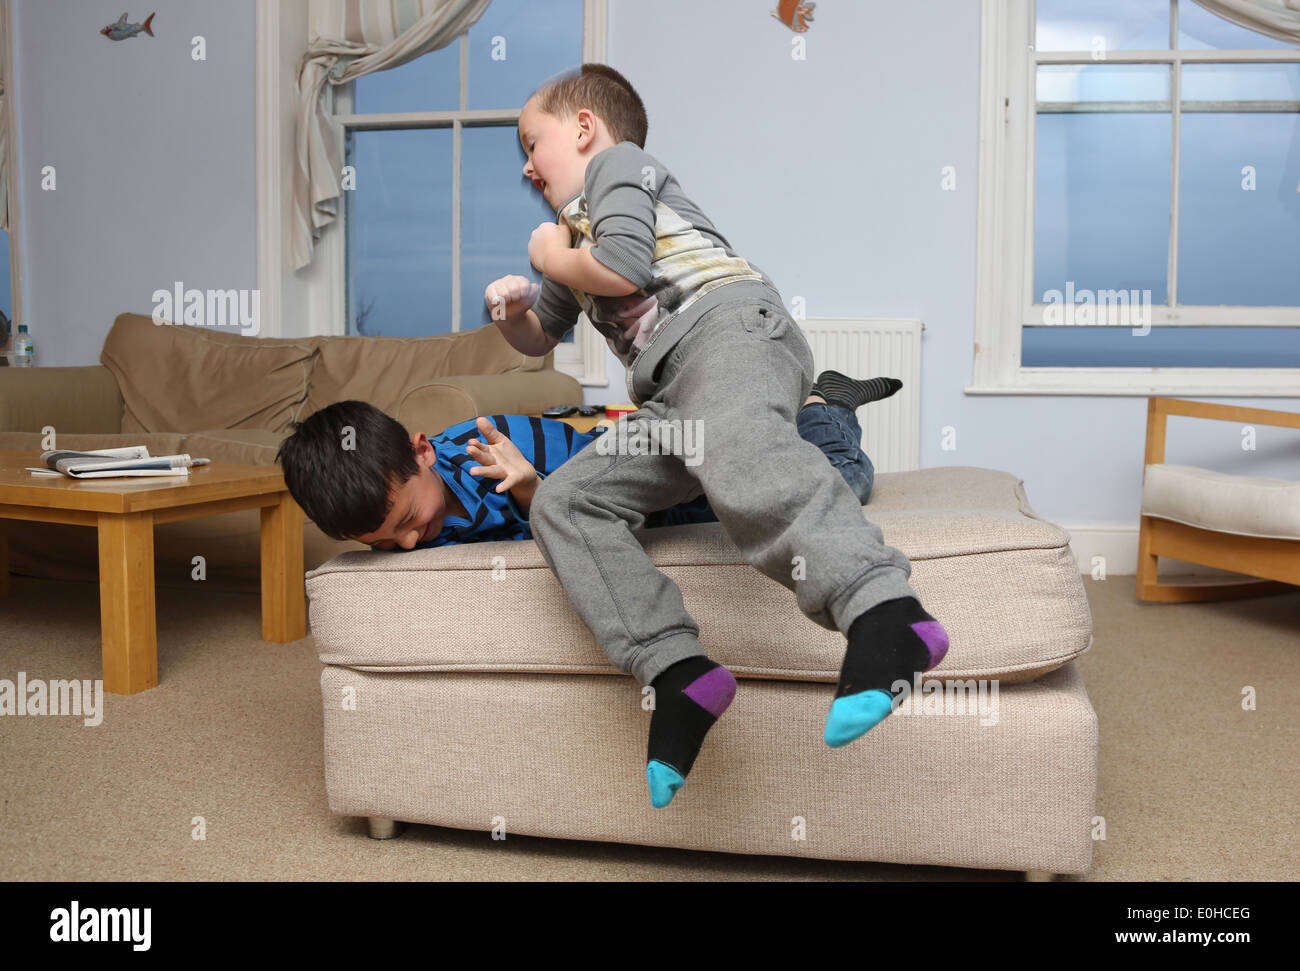 Children fighting Stock Photo